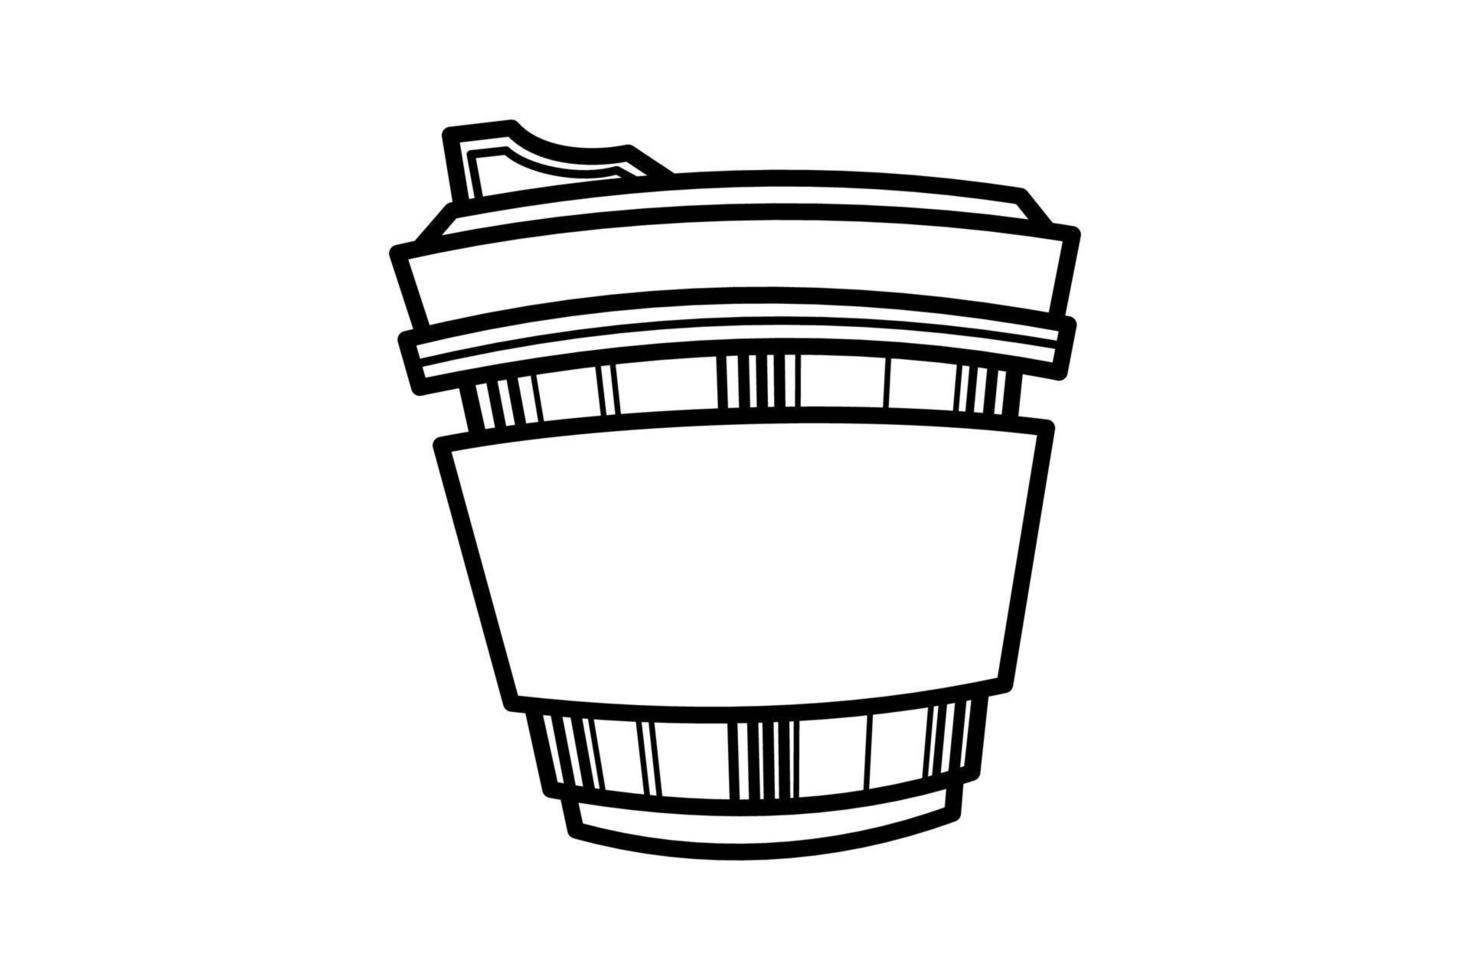 tazza di caffè disegno a tratteggio di arte decorativa modello in tazza su sfondo bianco vettore